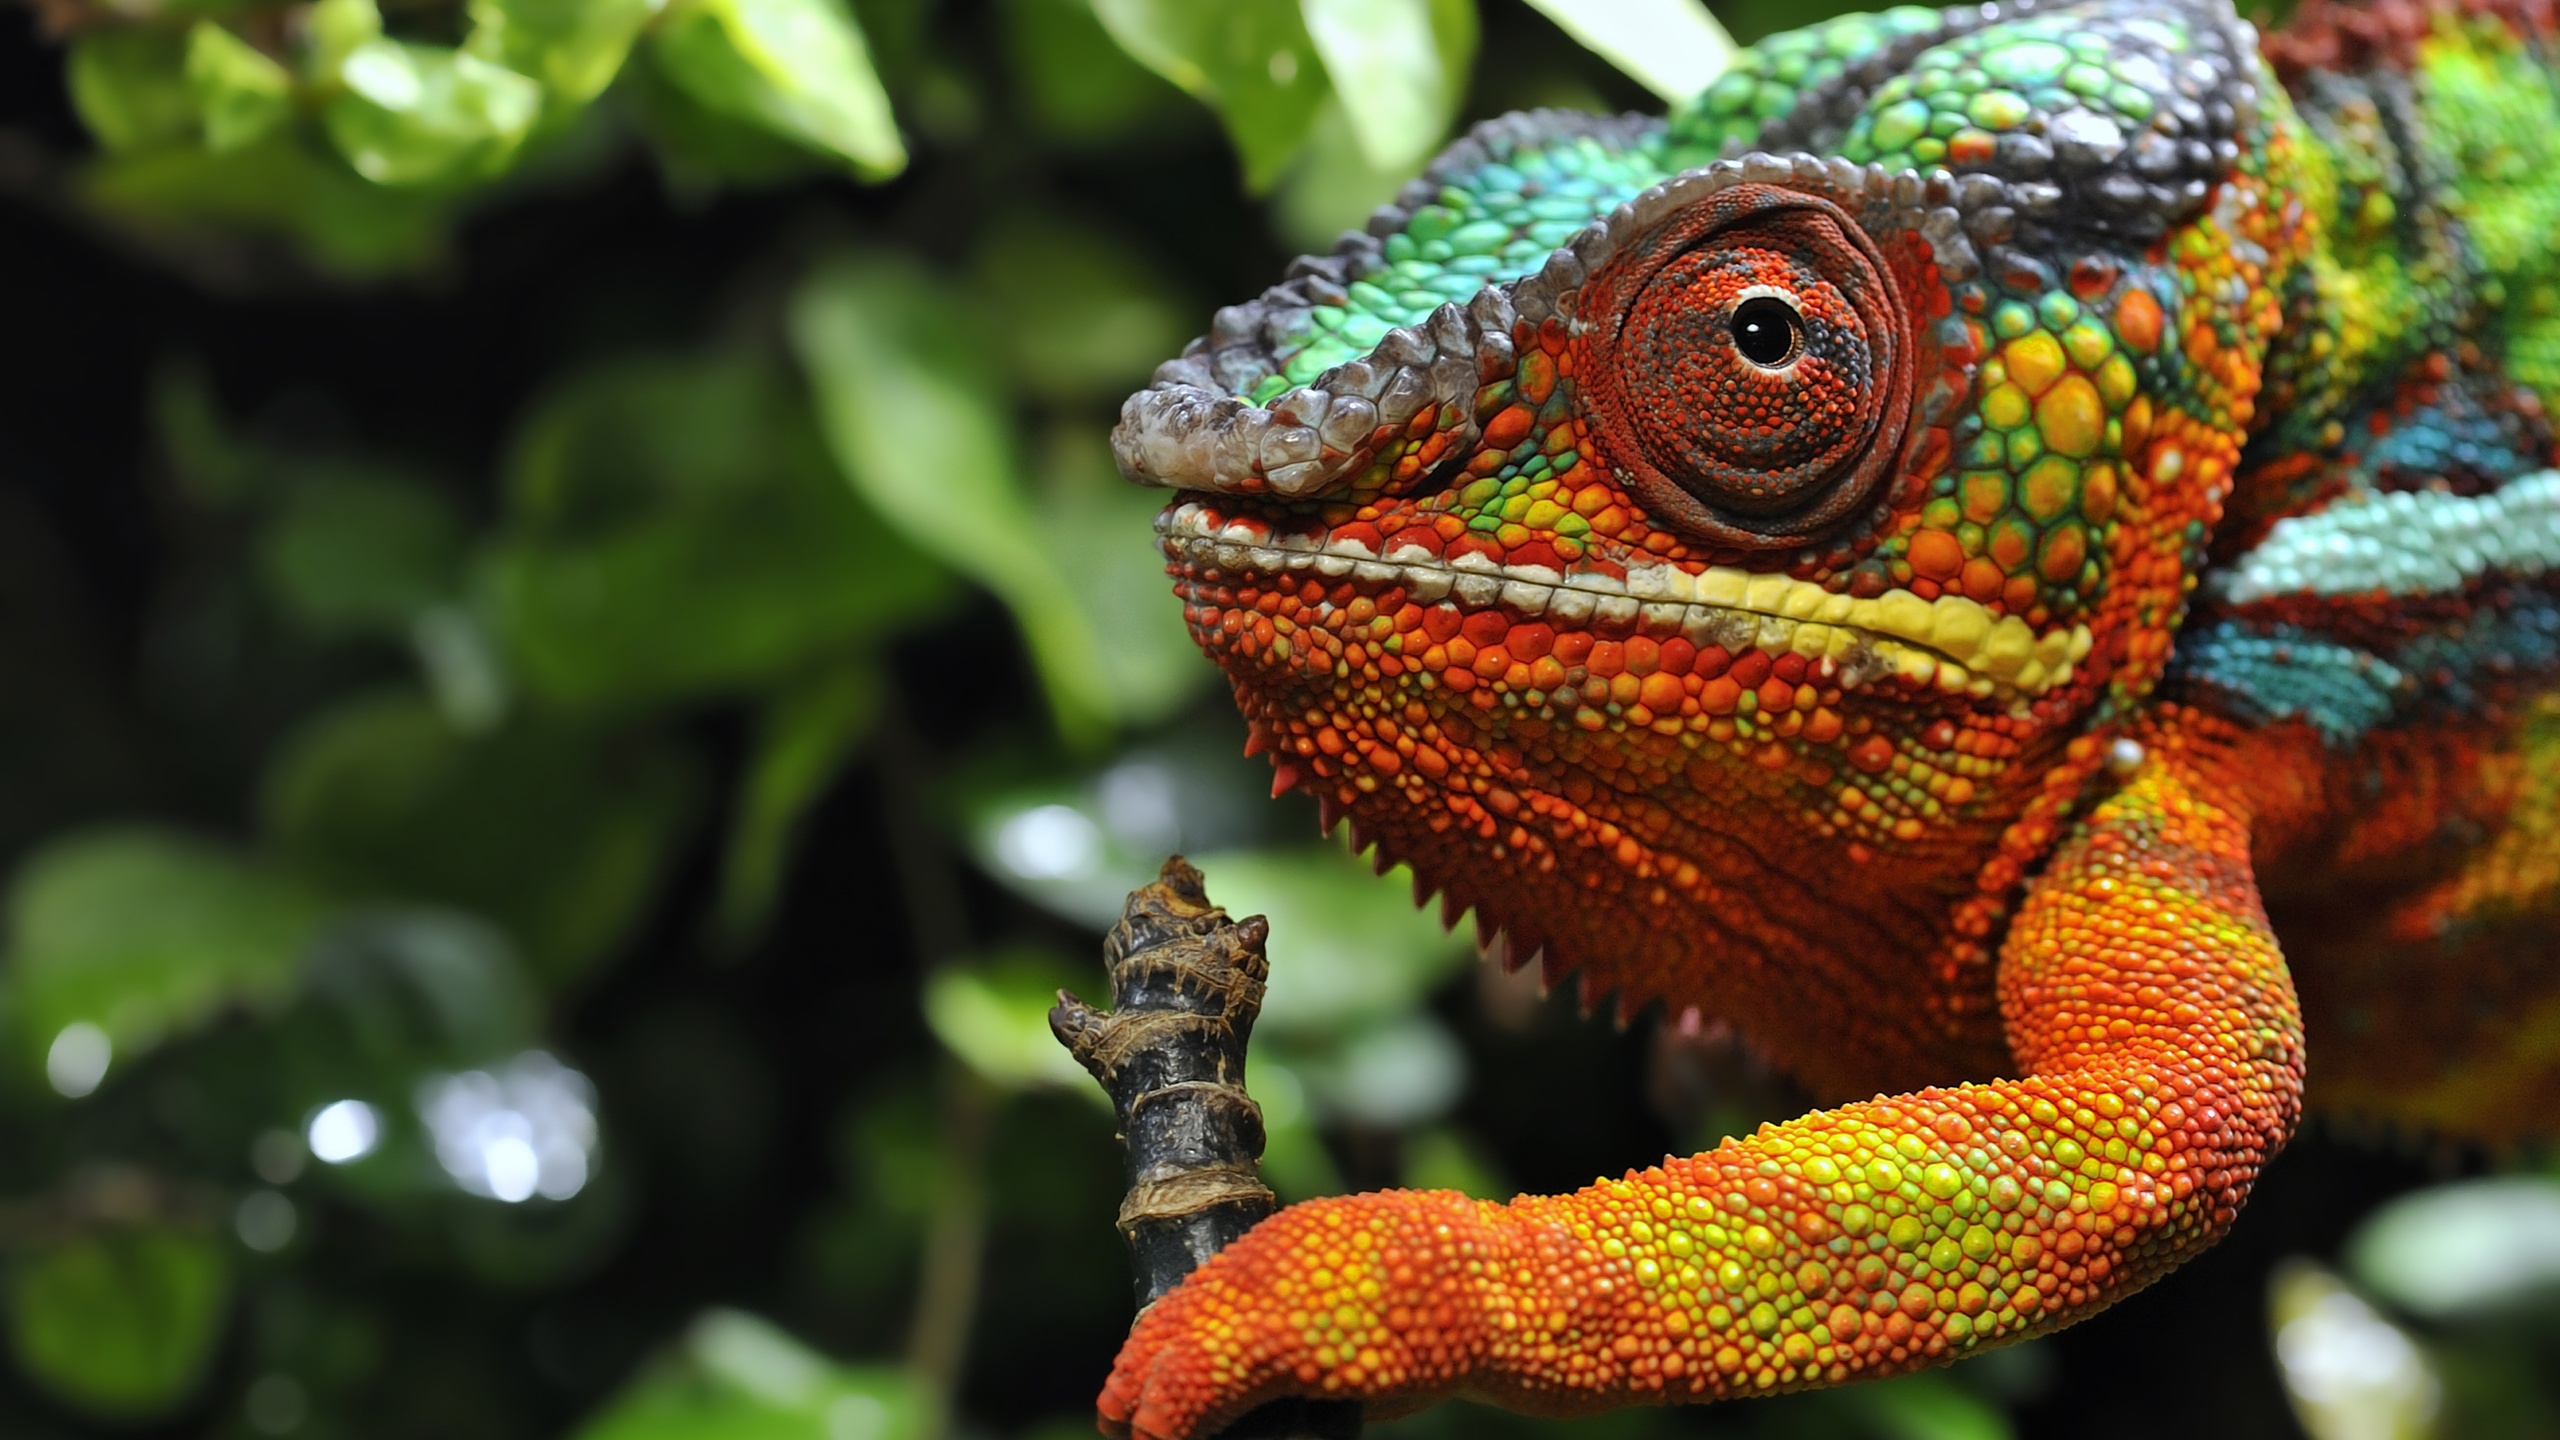 Multicolored Chameleon